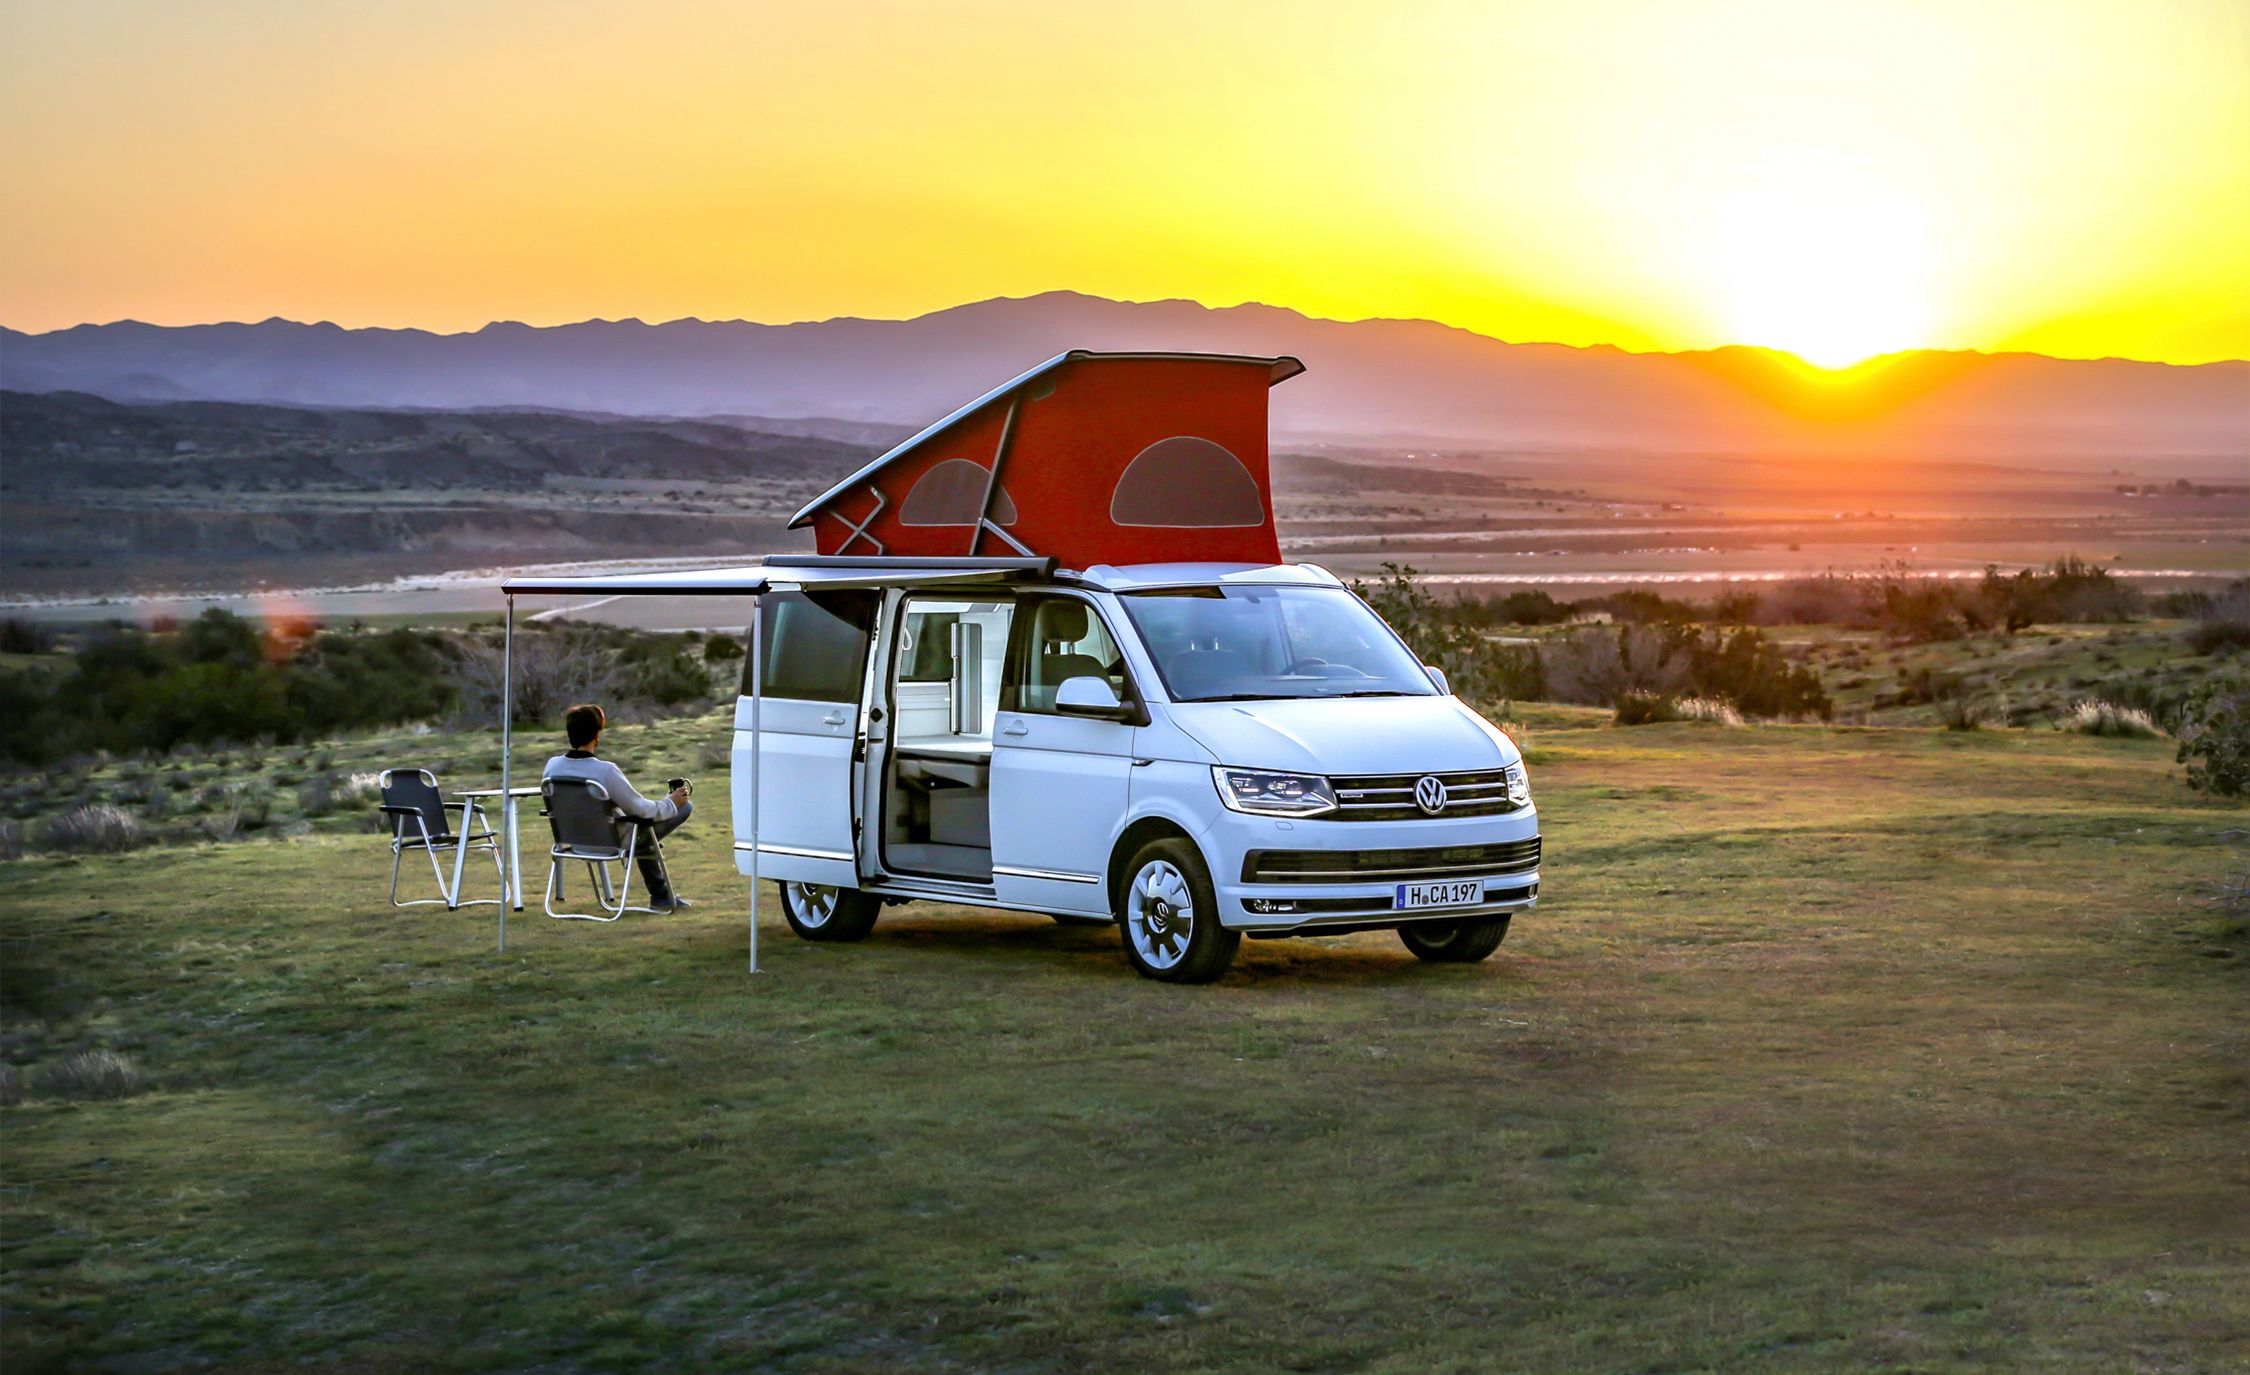 2018 Volkswagen California Camper Van Trip